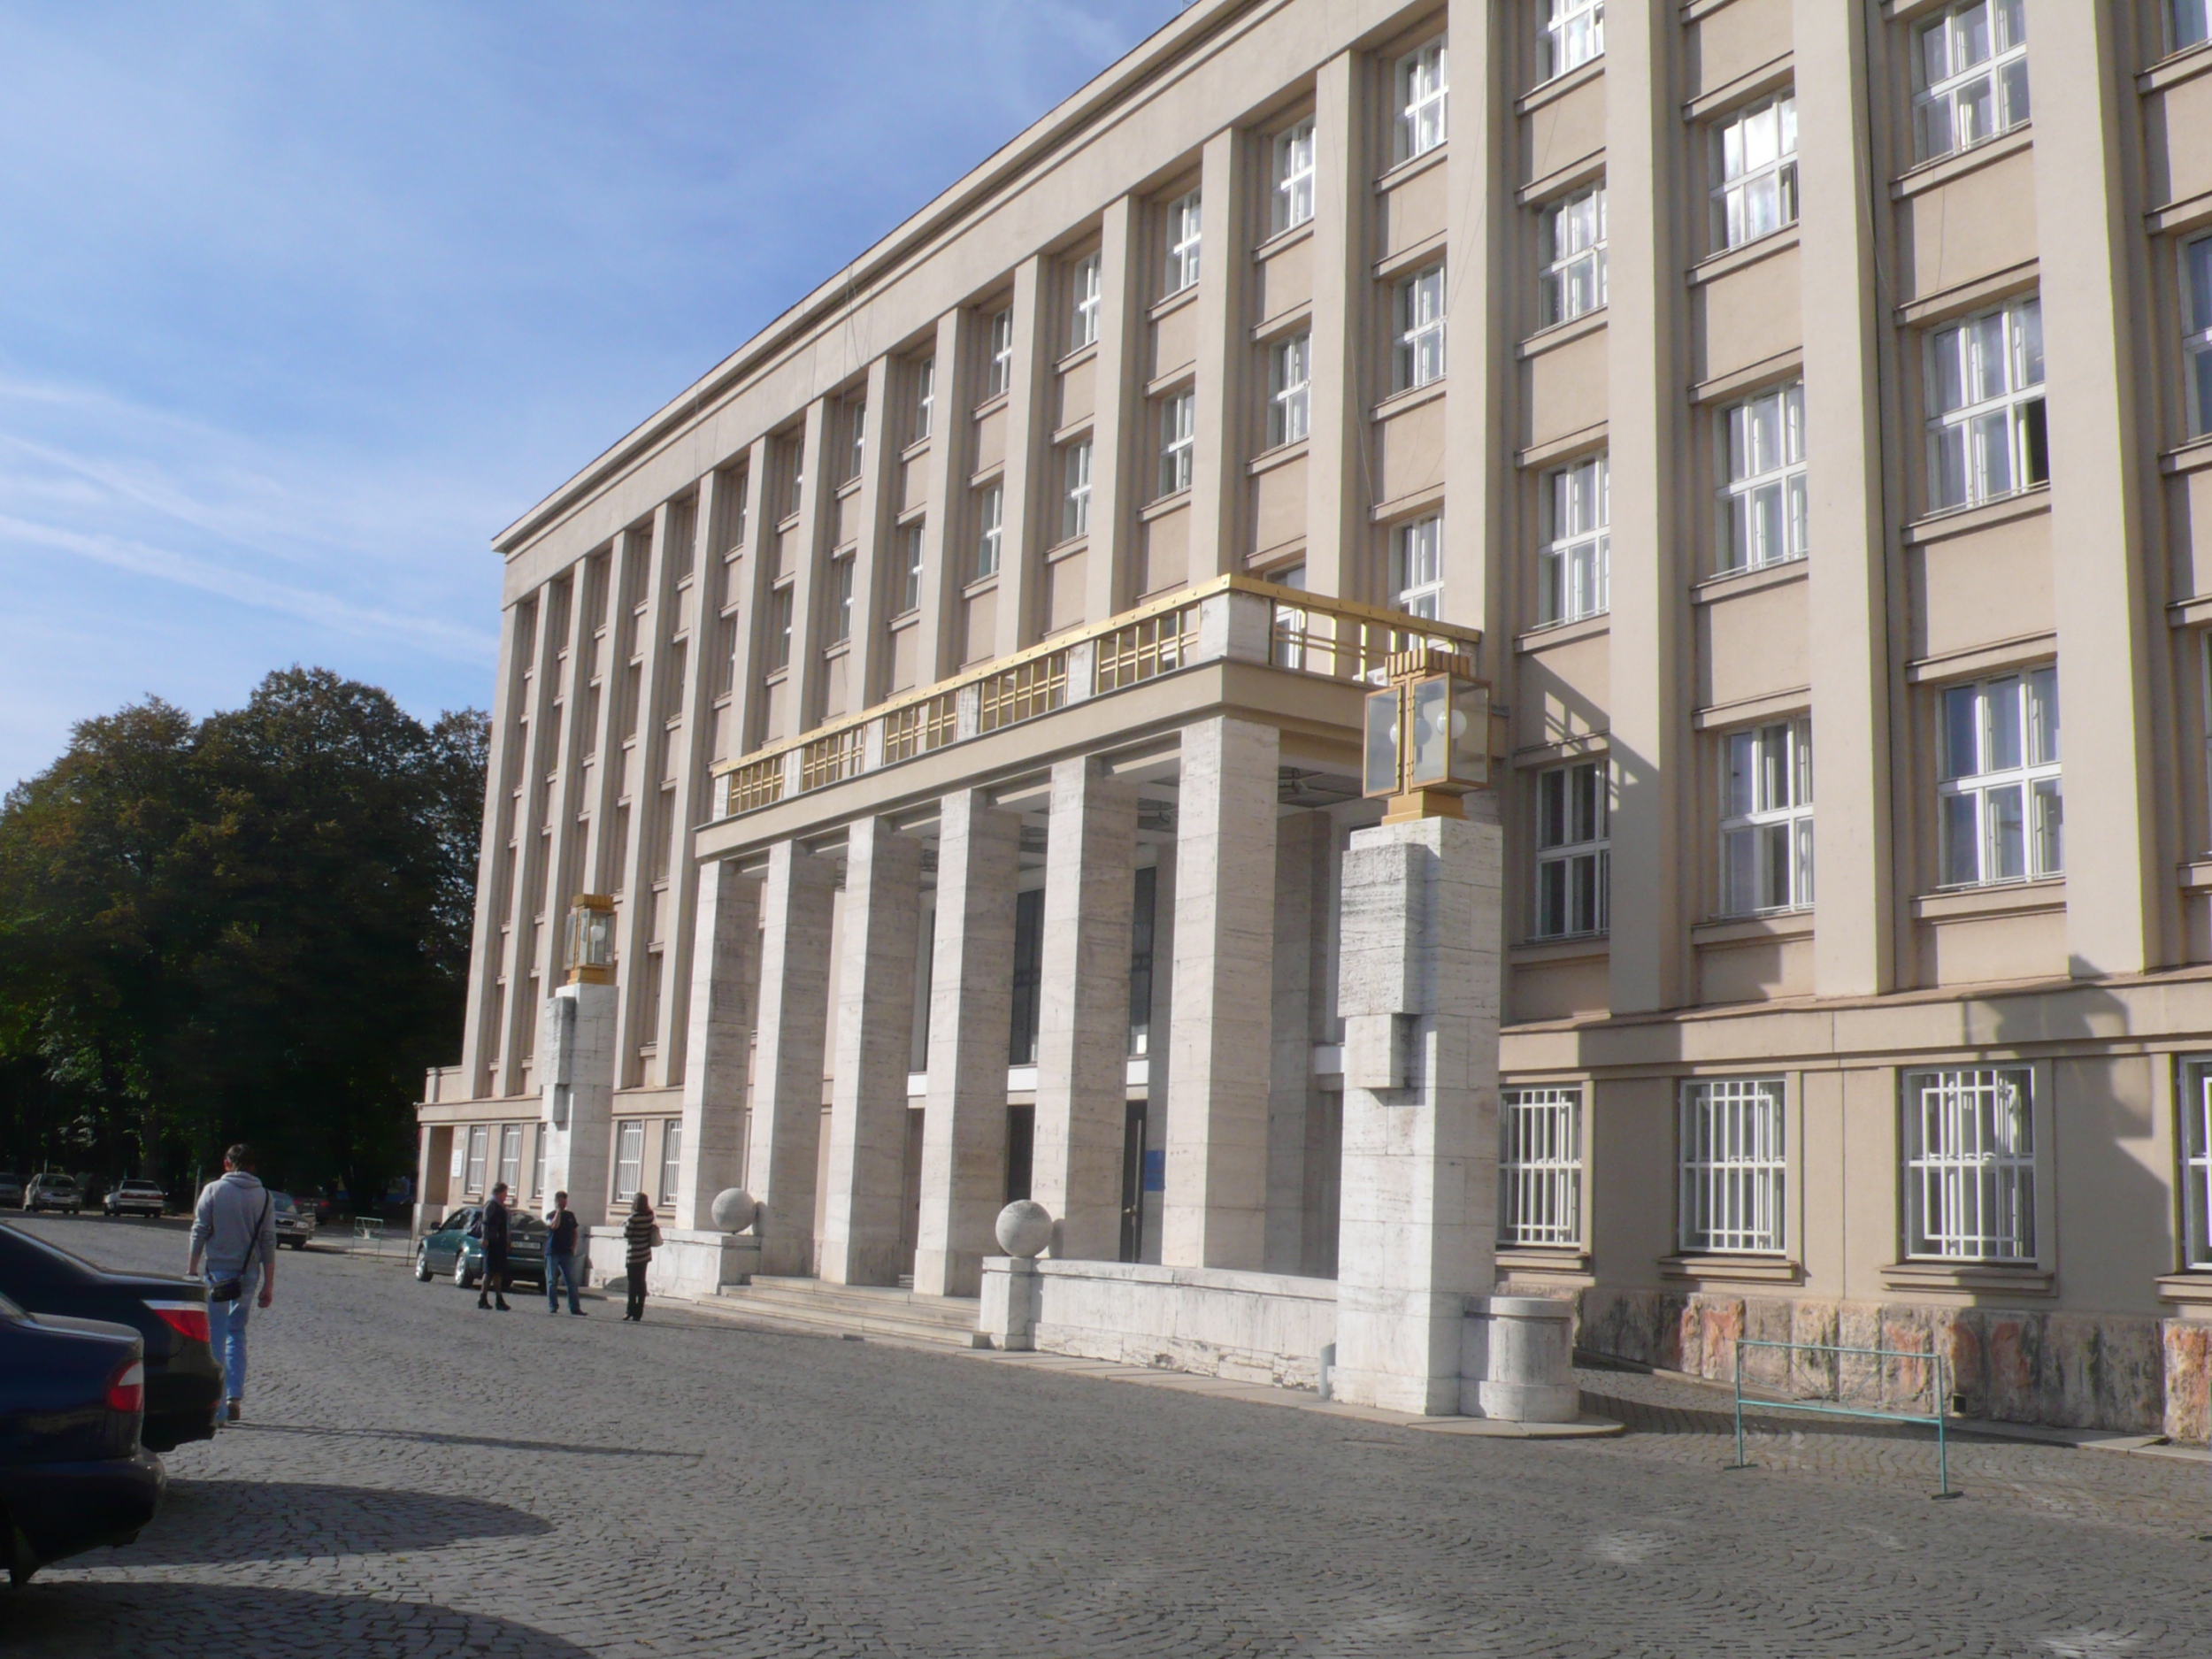 Zemsky-kormány központi épülete, Ungvár (Frantisek Krupka, 1937)